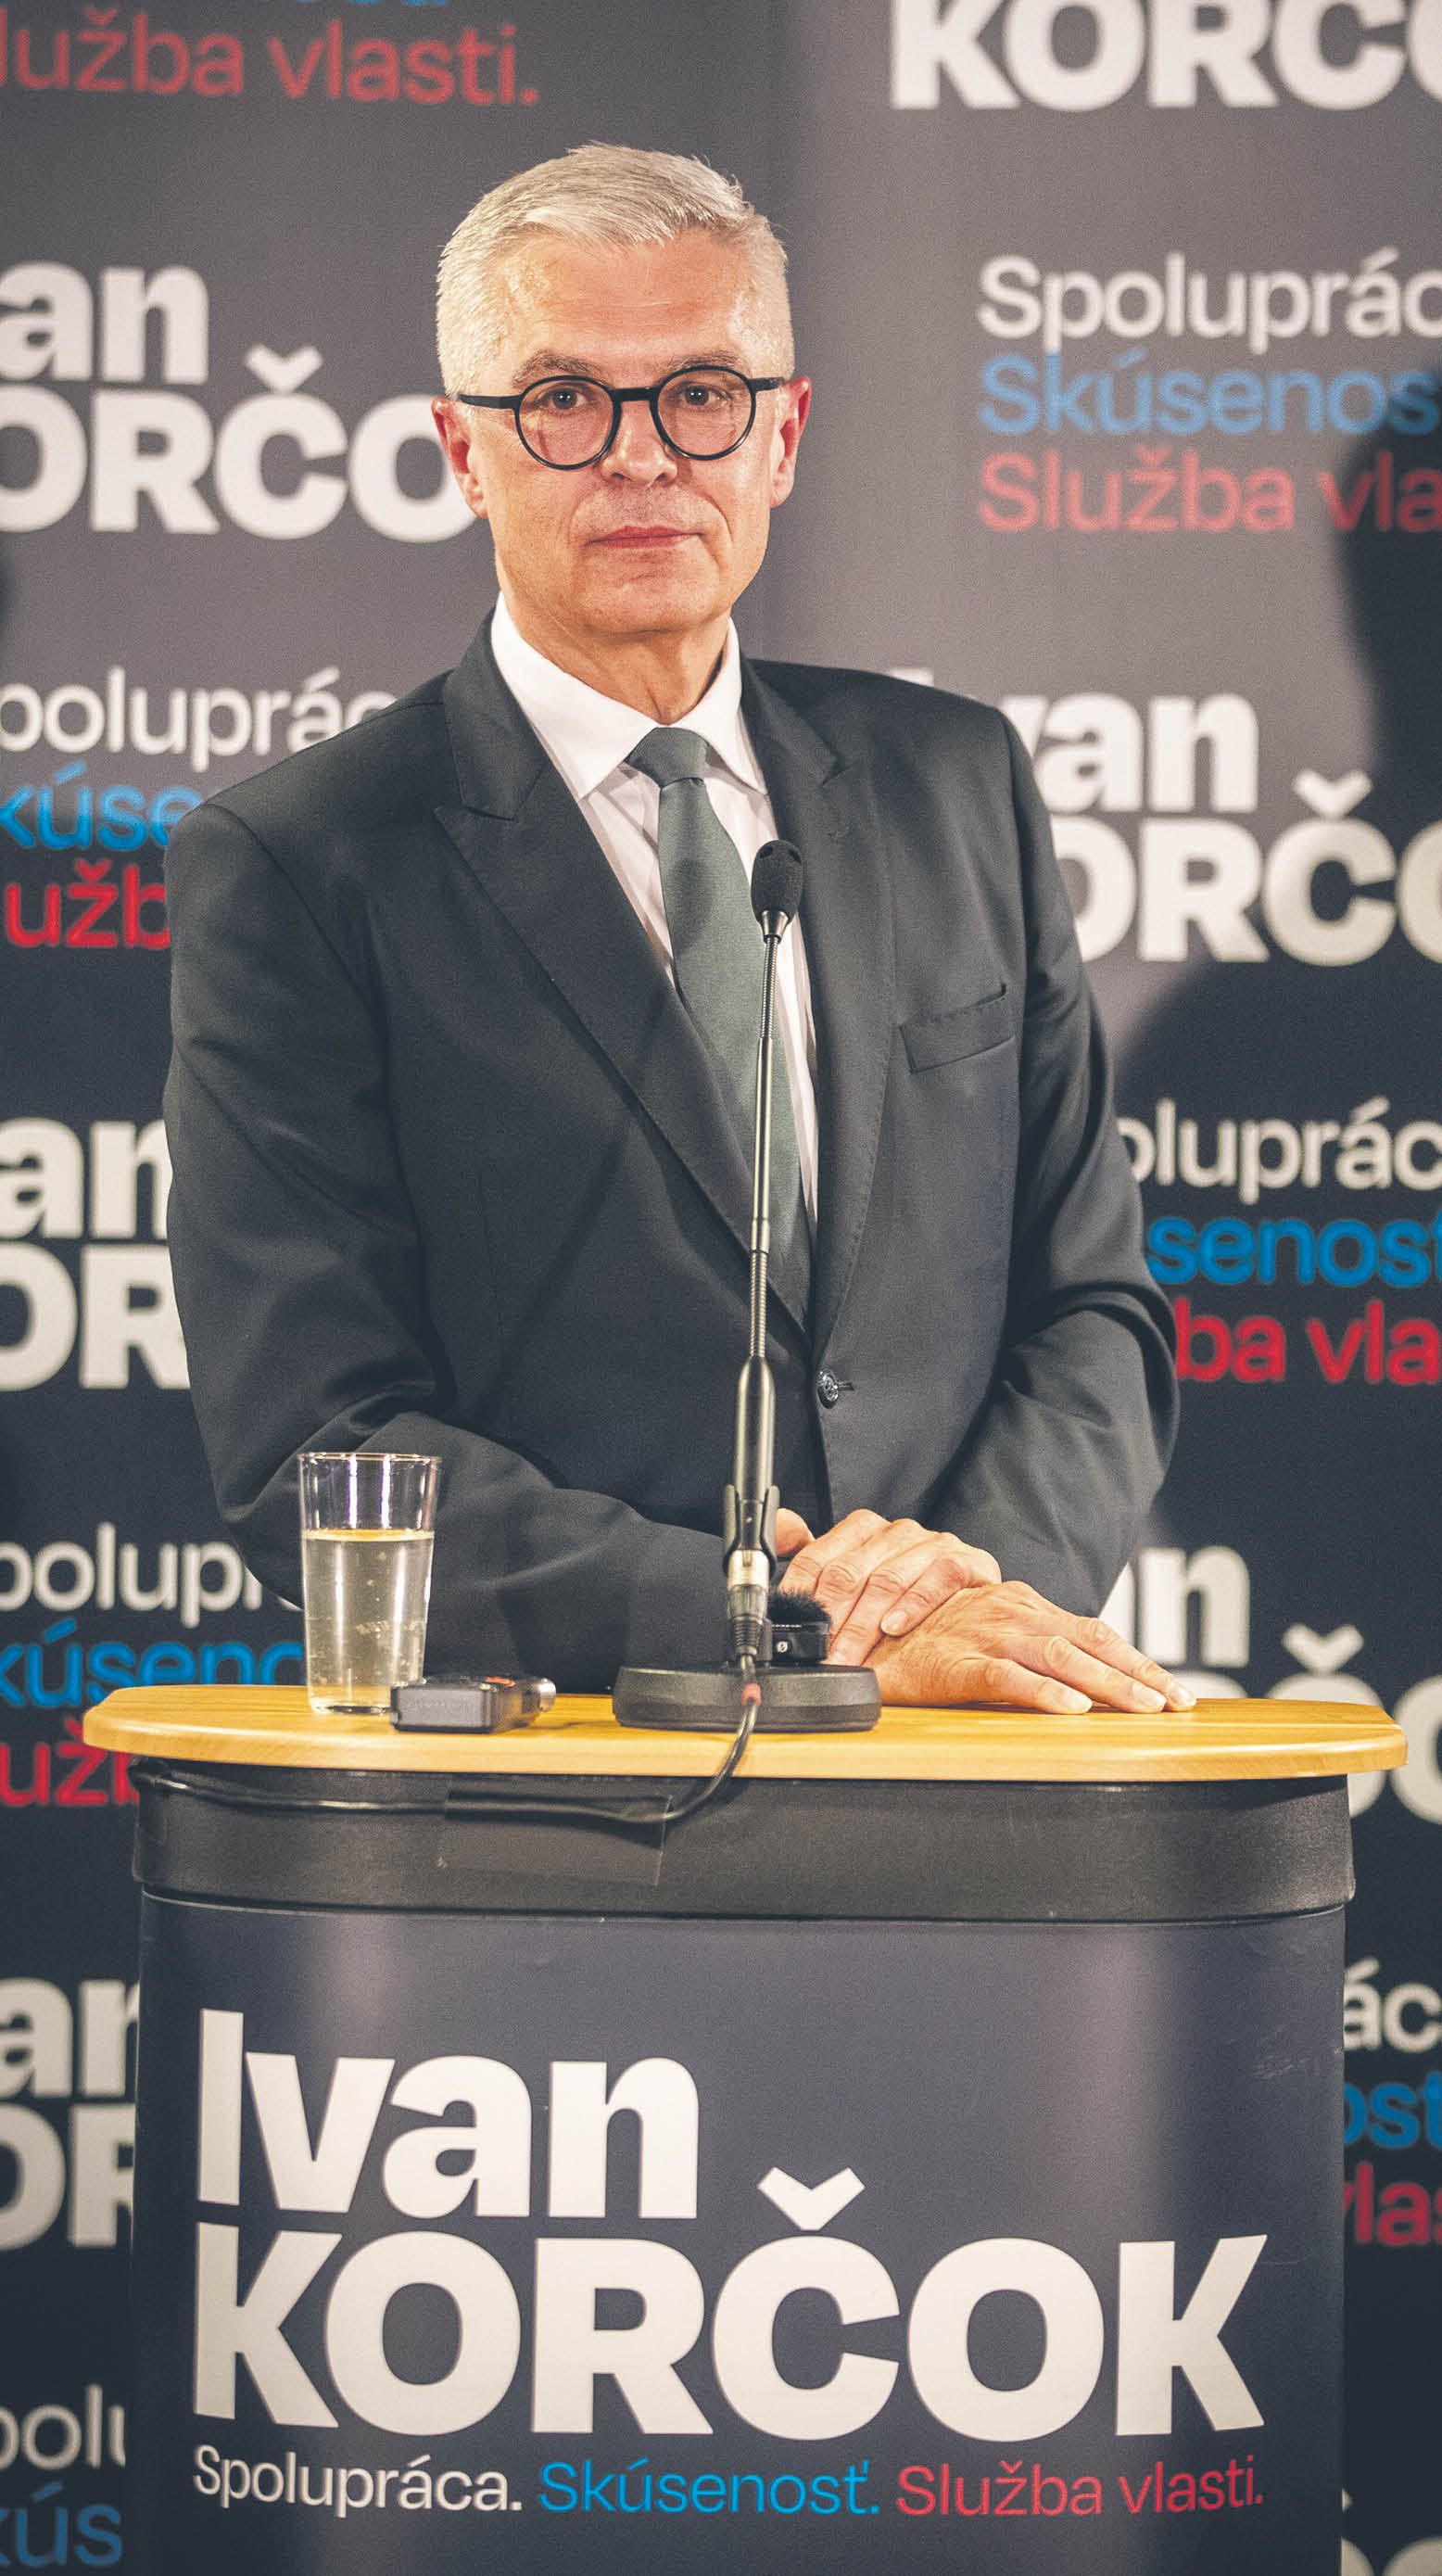 Pierwsze miejsce, zdobywając 42,5 proc. głosów, zajął liberalny kandydat Ivan Korčok